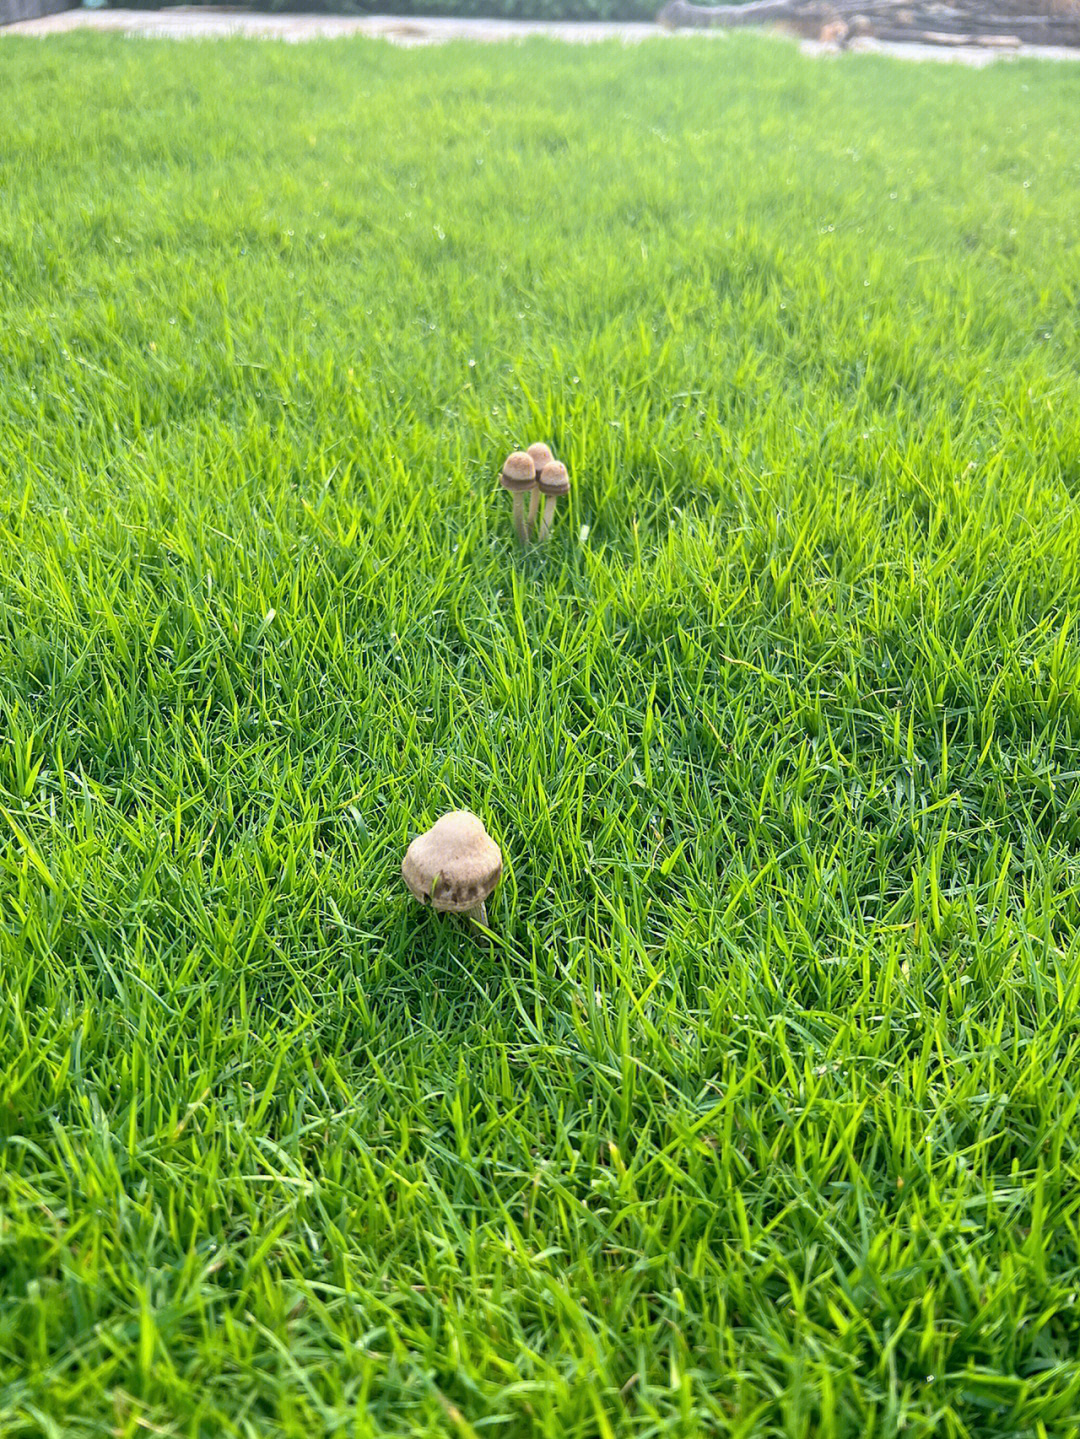 雨后草地蘑菇的美句图片